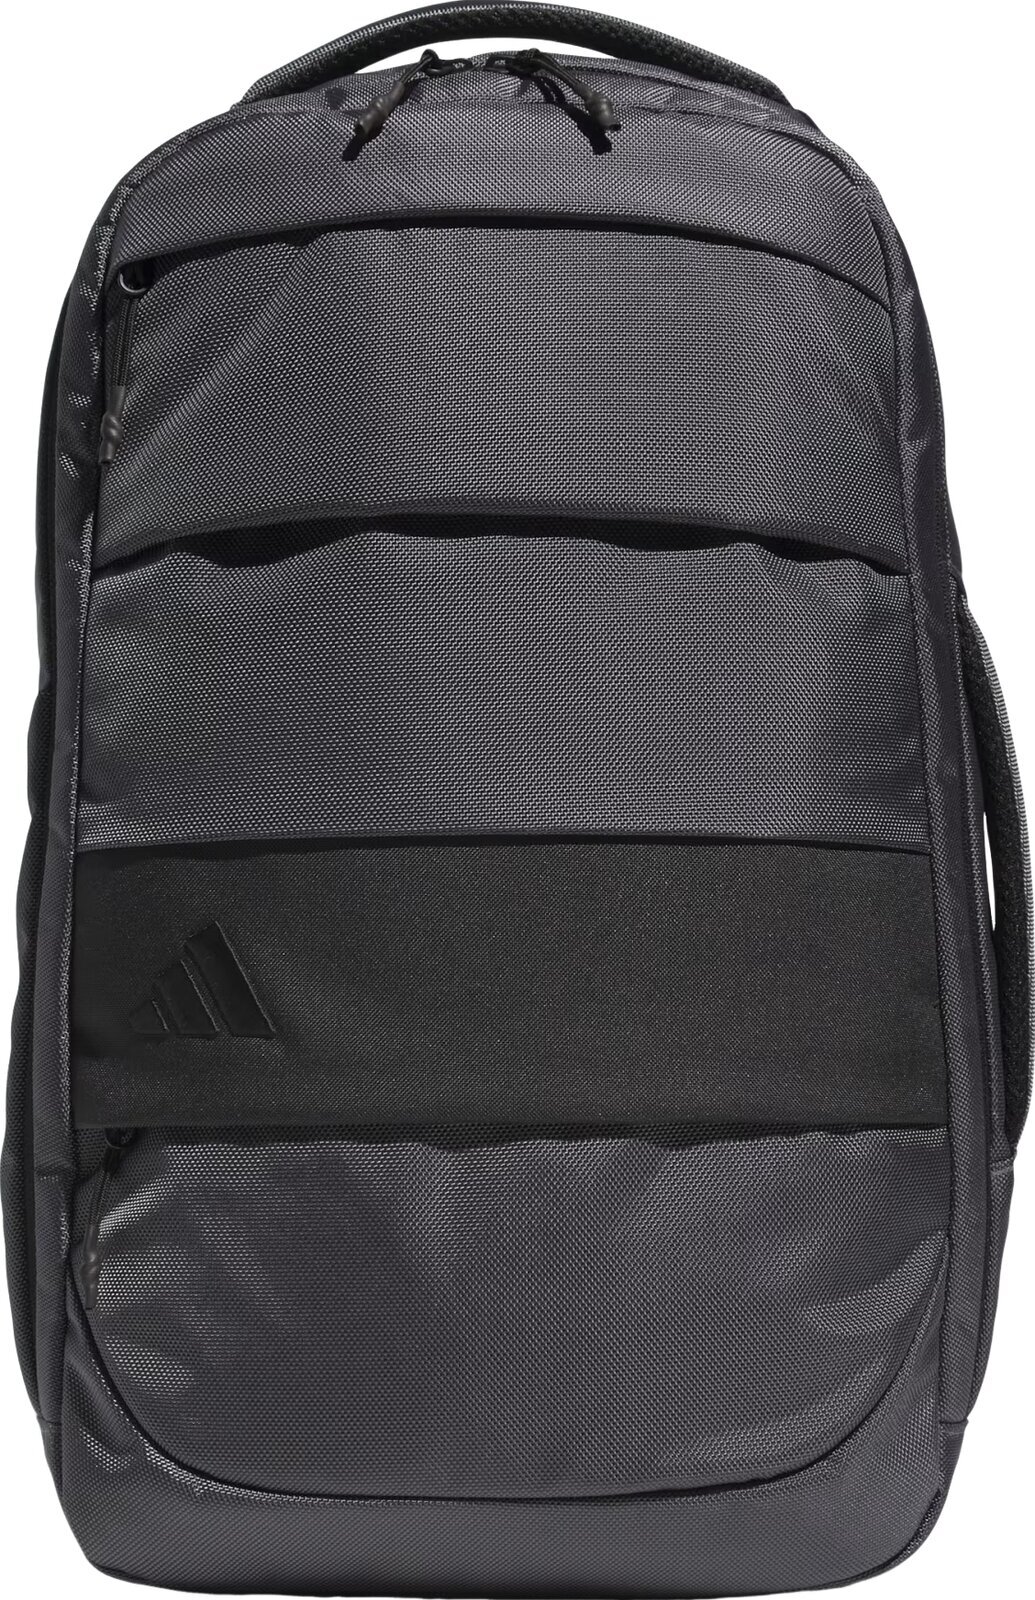 Lifestyle plecak / Torba Adidas Hybrid Backpack Grey 28,20 L Plecak